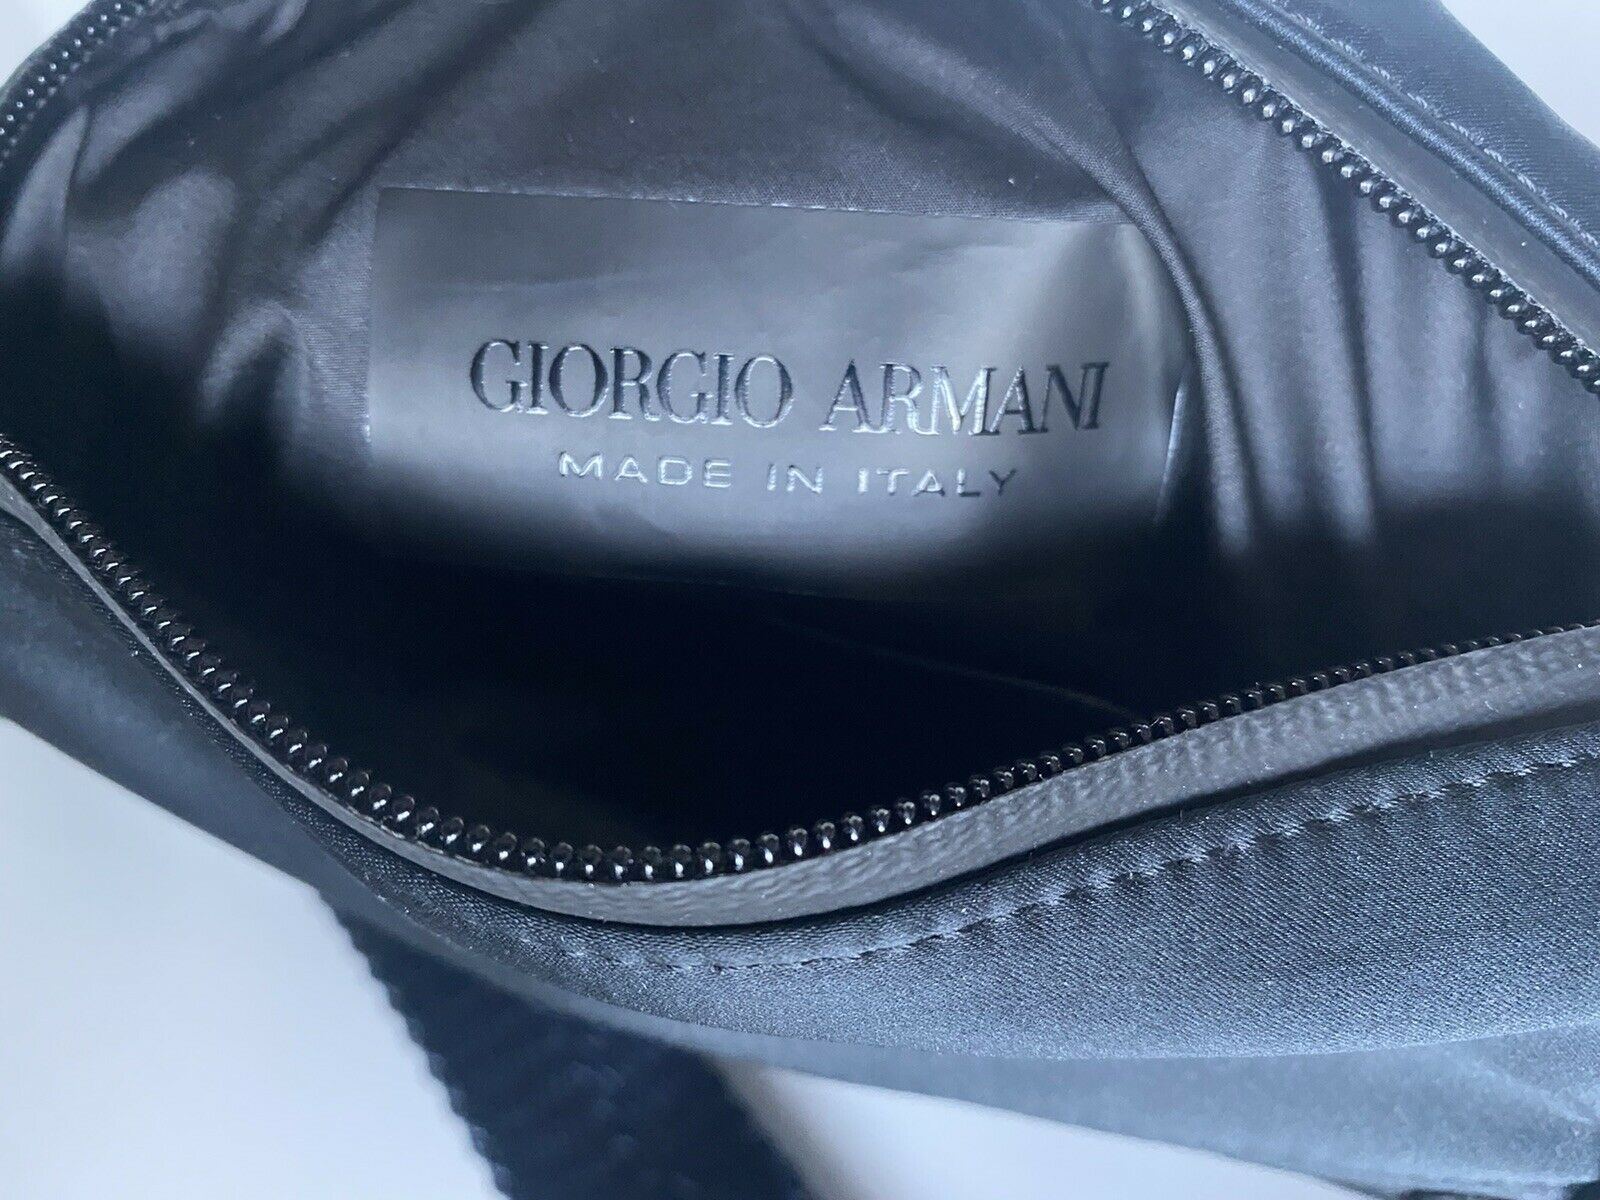 Синяя нейлоновая сумка через плечо Giorgio Armani за 695 долларов, сделано в Италии. 